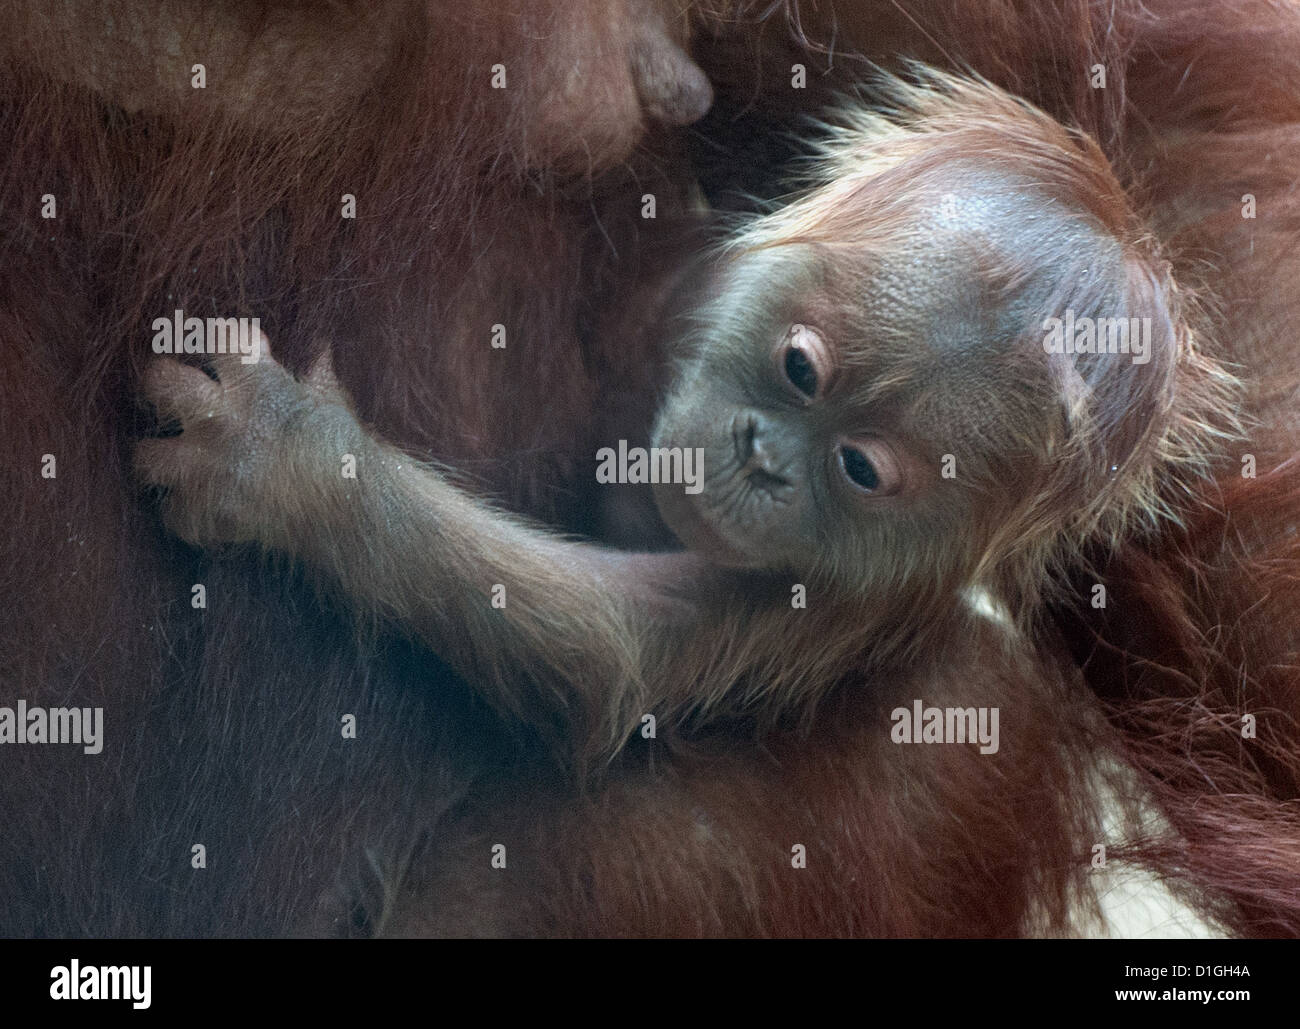 Madre orangután 'Rosa' mantiene su descendencia en el zoológico de Frankfurt am Main, Alemania, el 20 de diciembre de 2012. El orangután bebé nació el 30 de noviembre. Foto: BORIS ROESSLER Foto de stock